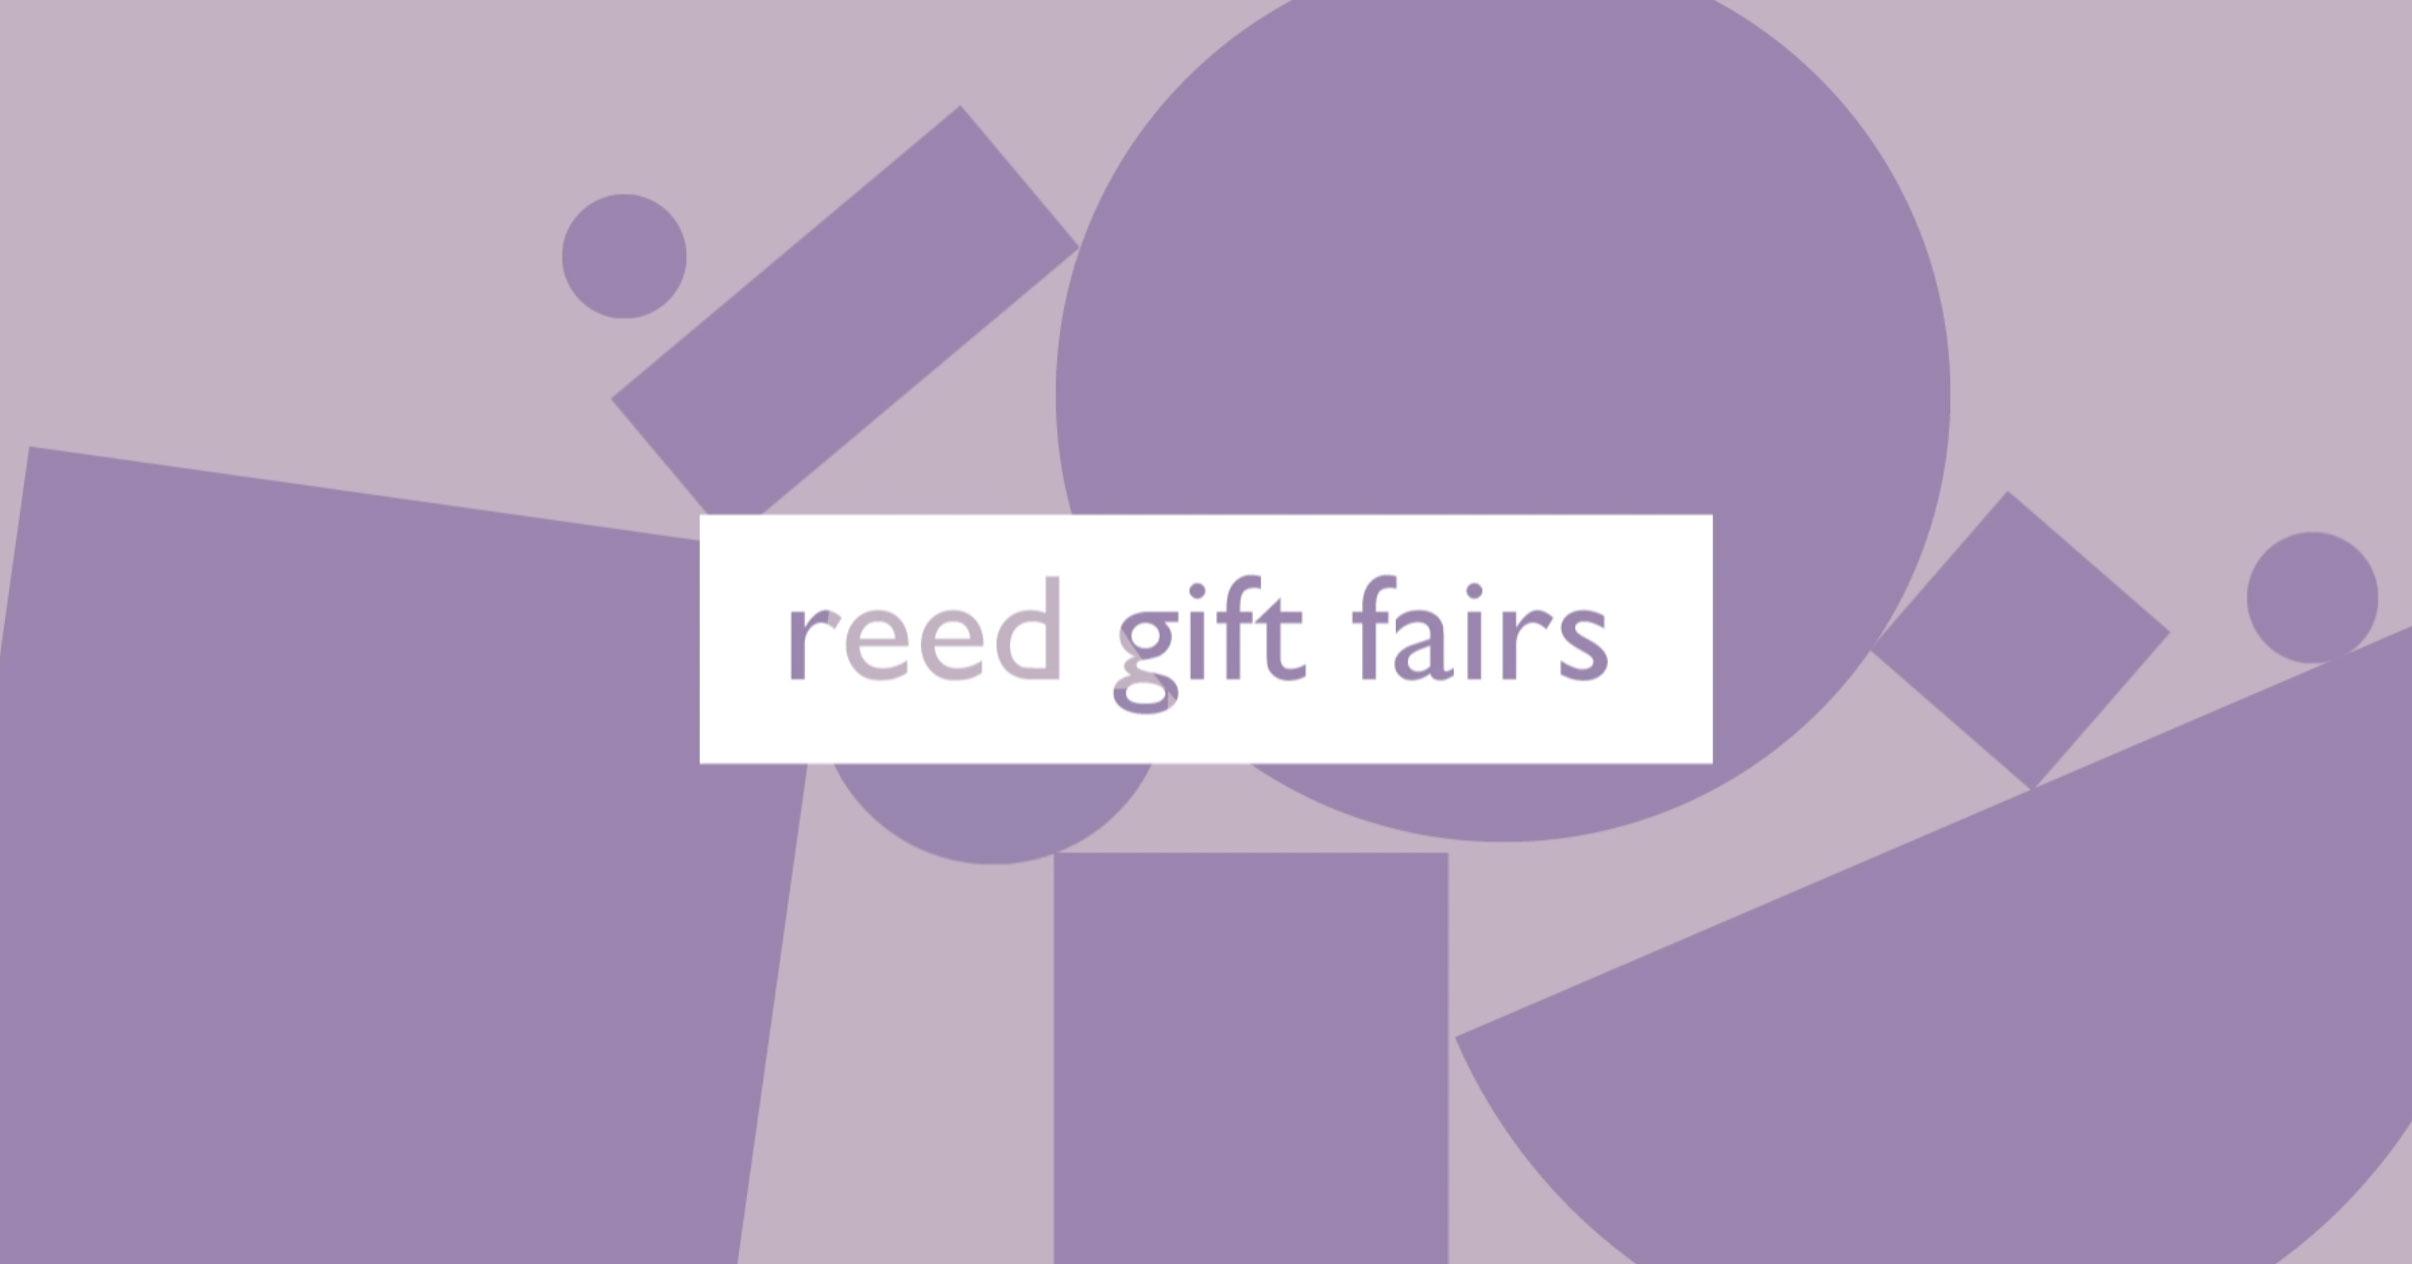 Reed Gift Fair - Sydney